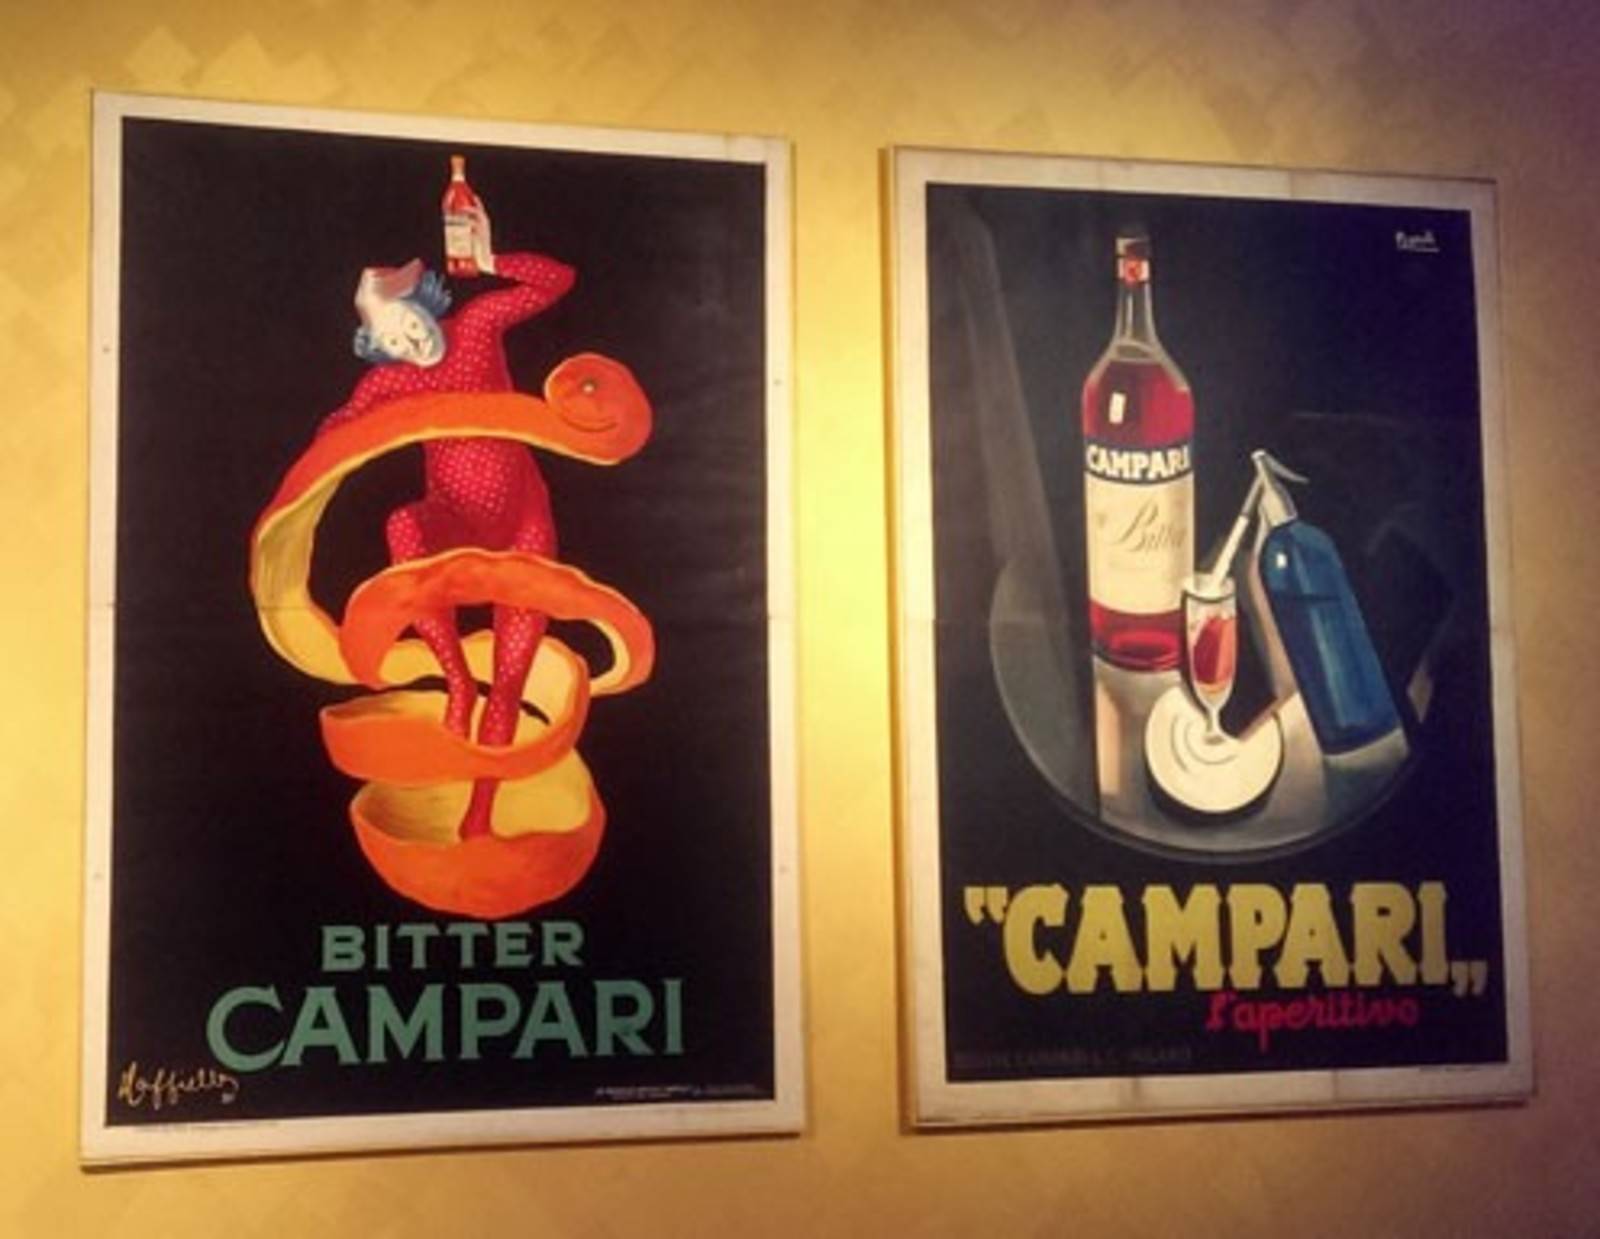 In der Galleria Campari werden nicht nur die Originale der Werbeplakate ausgestellt, sondern auch Clips gezeigt und die Geschichte erzählt - mit multimedialer Unterstützung.